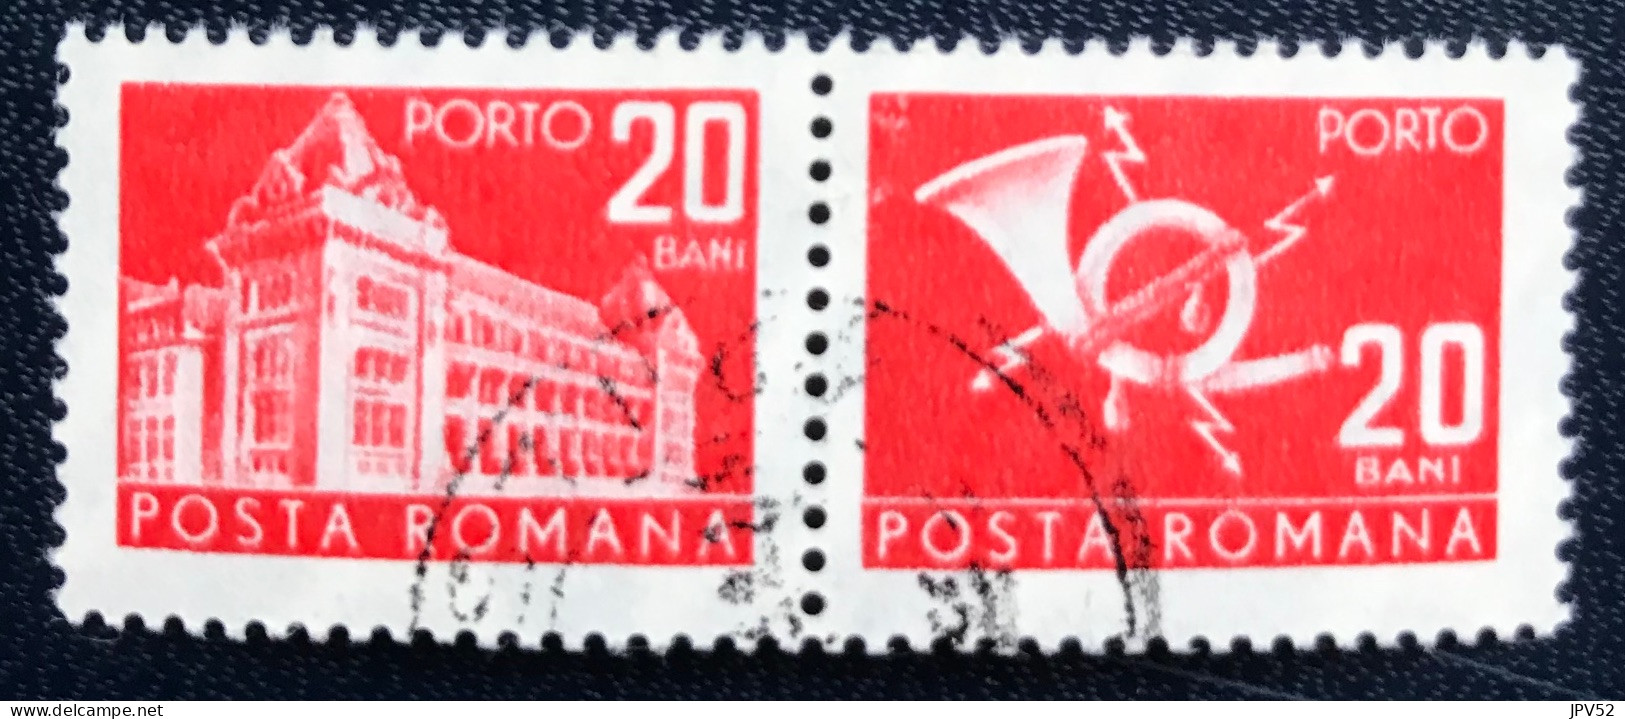 Romana - Roemenië - C14/54 - 1970 - (°)used - Michel 116 - Postkantoor & Posthoorn & Bliksem - Strafport